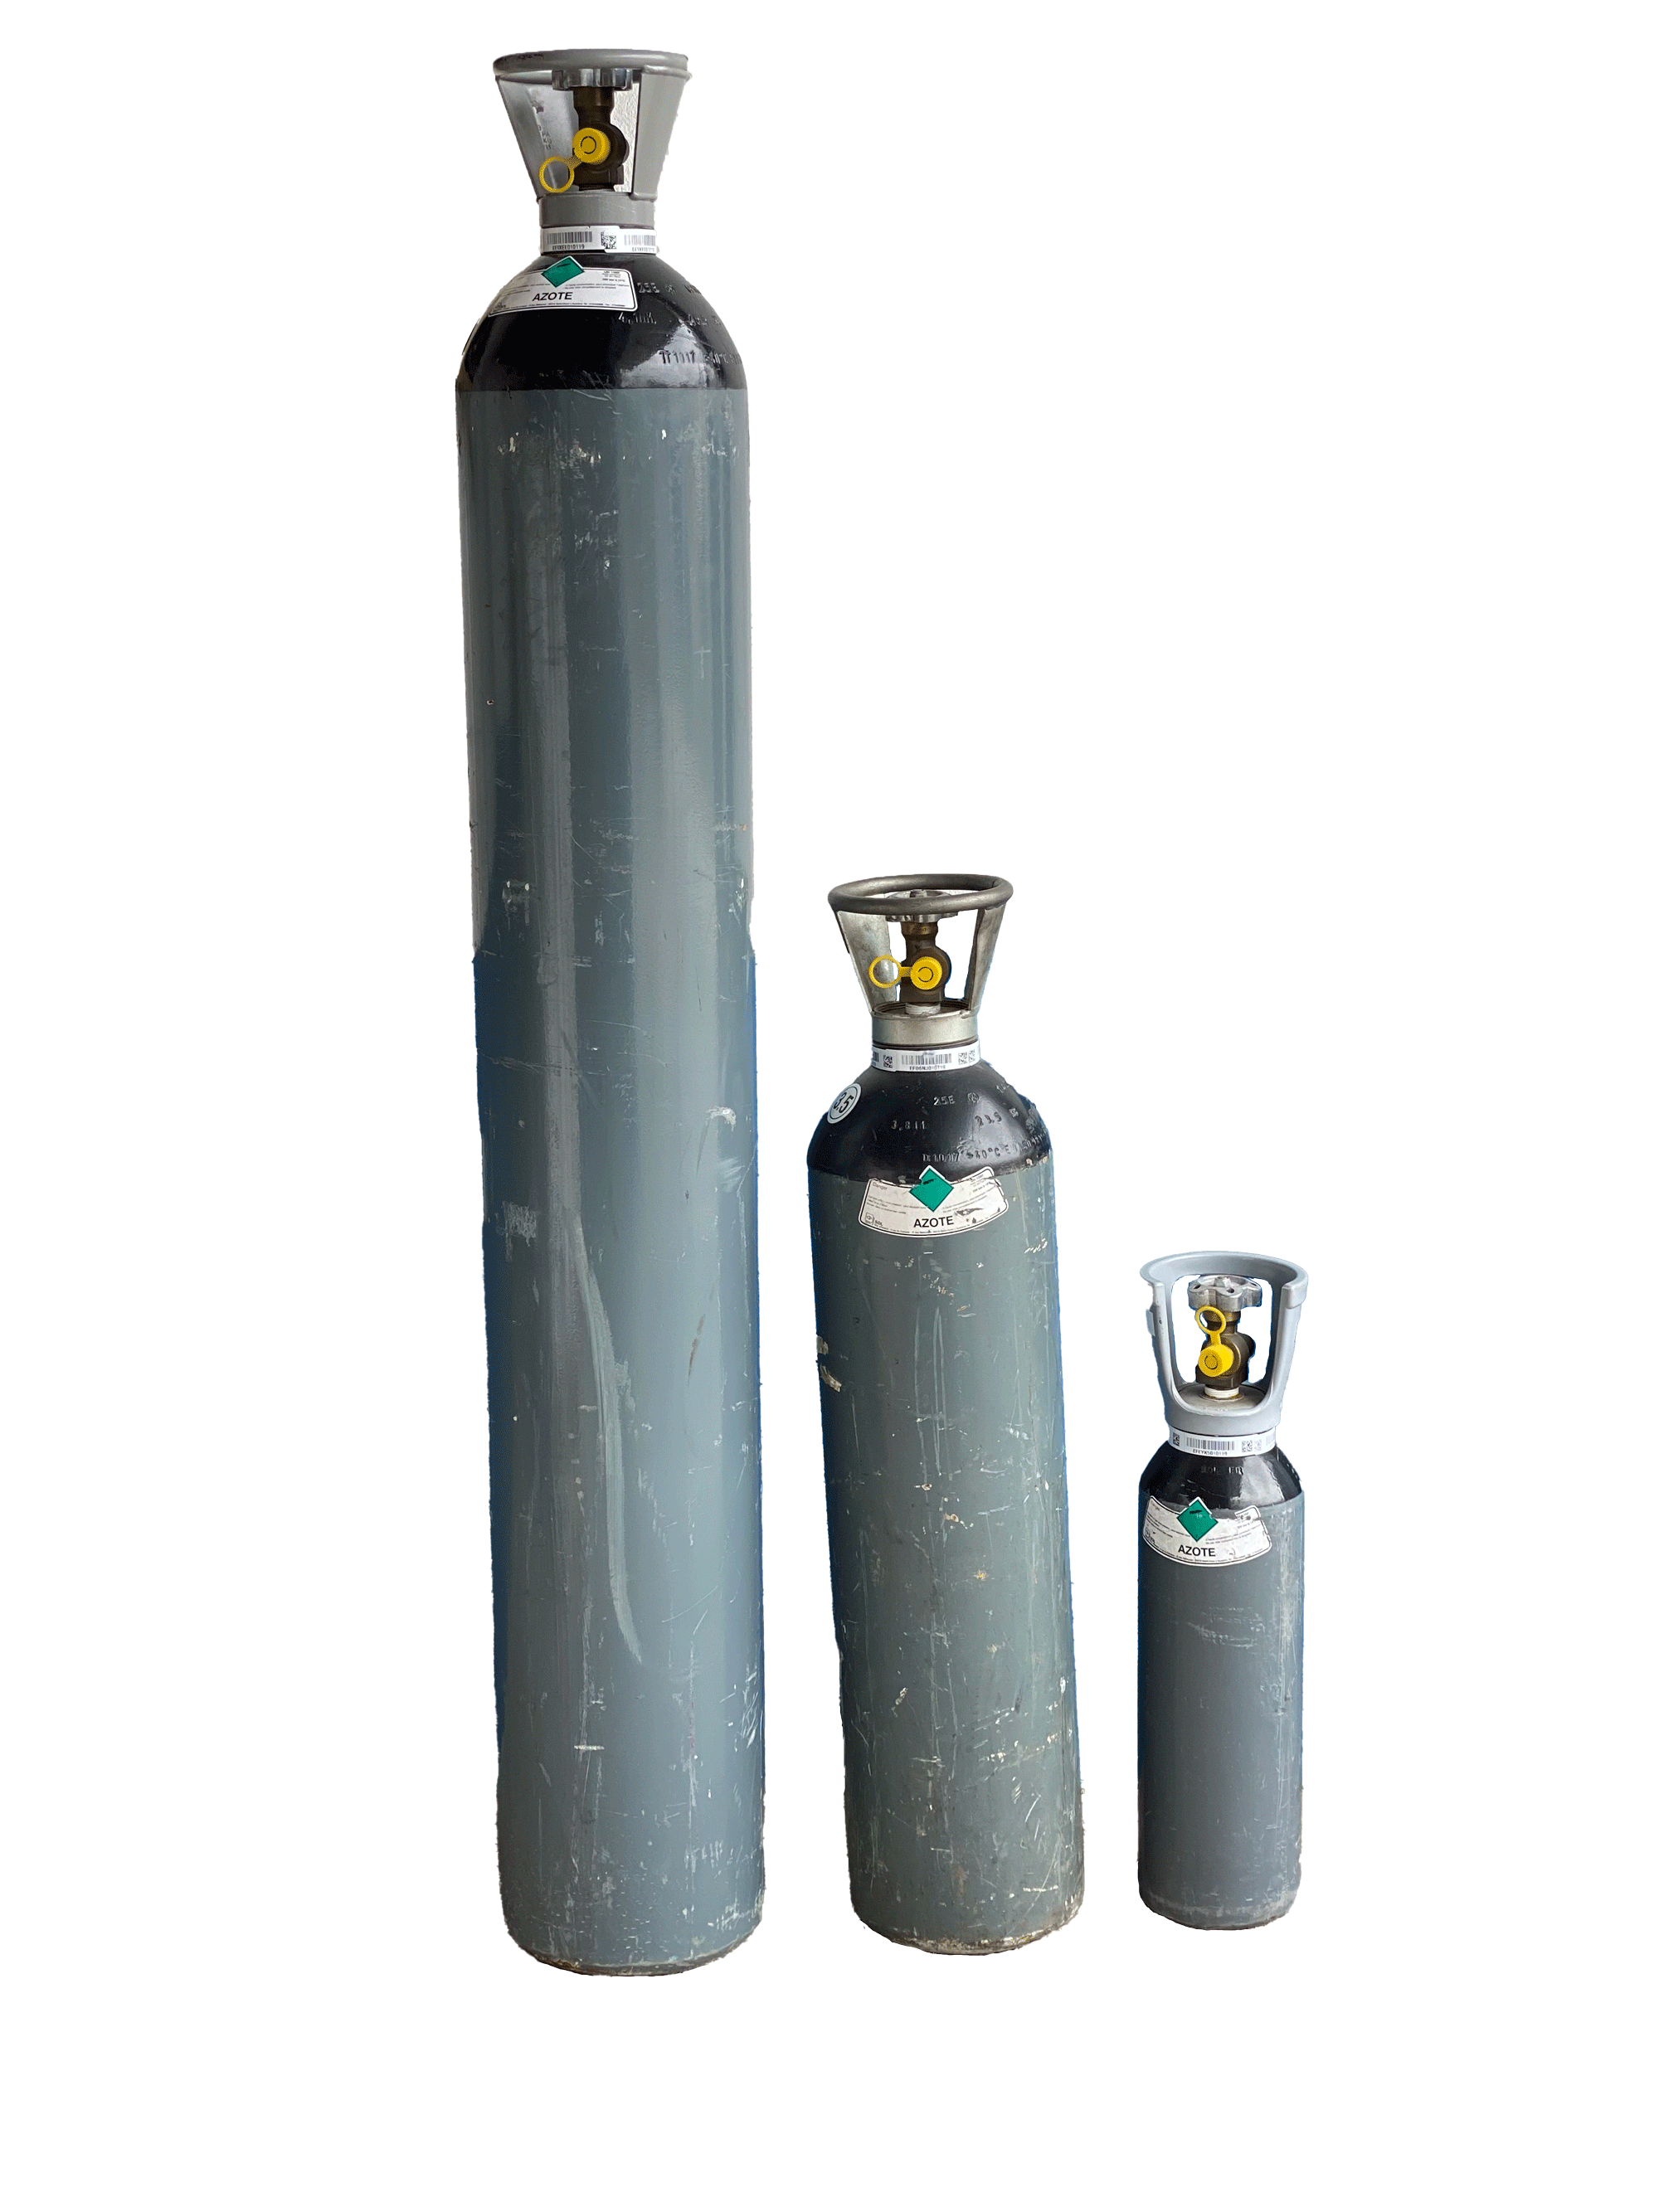 L'azote est utilisé pour protéger le soudage des aciers.